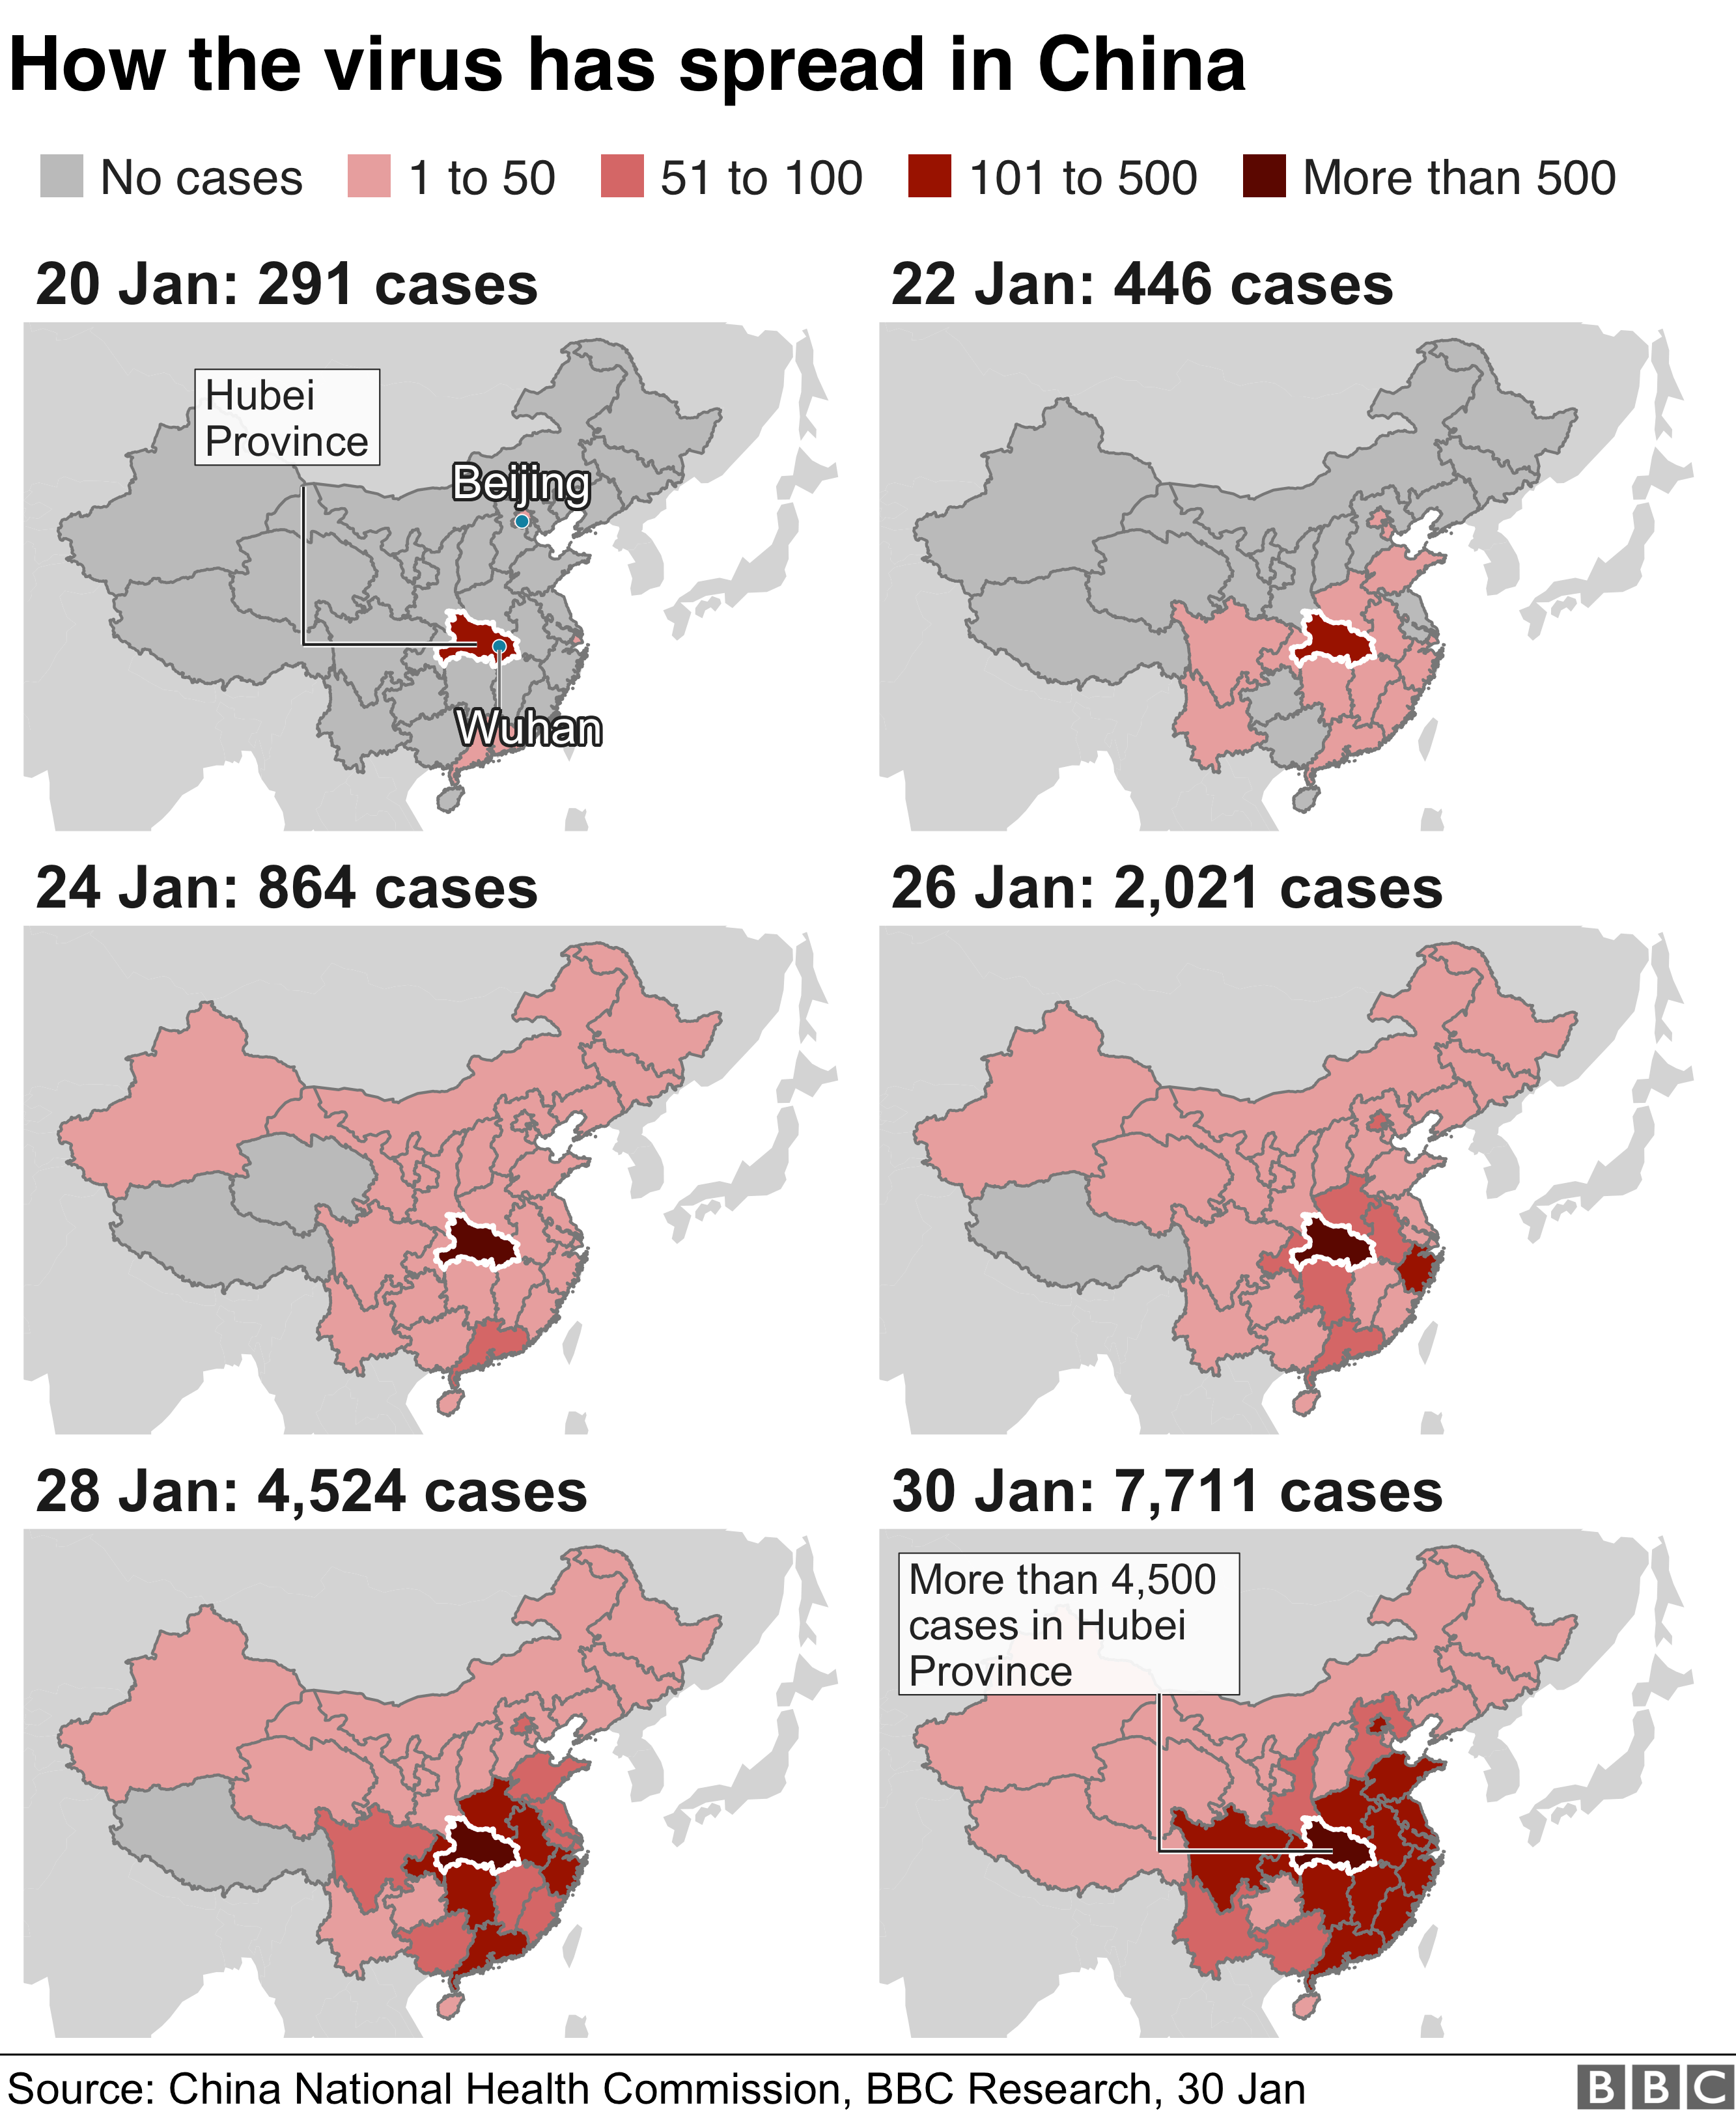 Случаи коронавируса распространились по каждой провинции Китая. В настоящее время зарегистрировано 7711 случаев по сравнению с 291 на 20 января. В провинции Хубэй зарегистрировано более 4500 случаев.